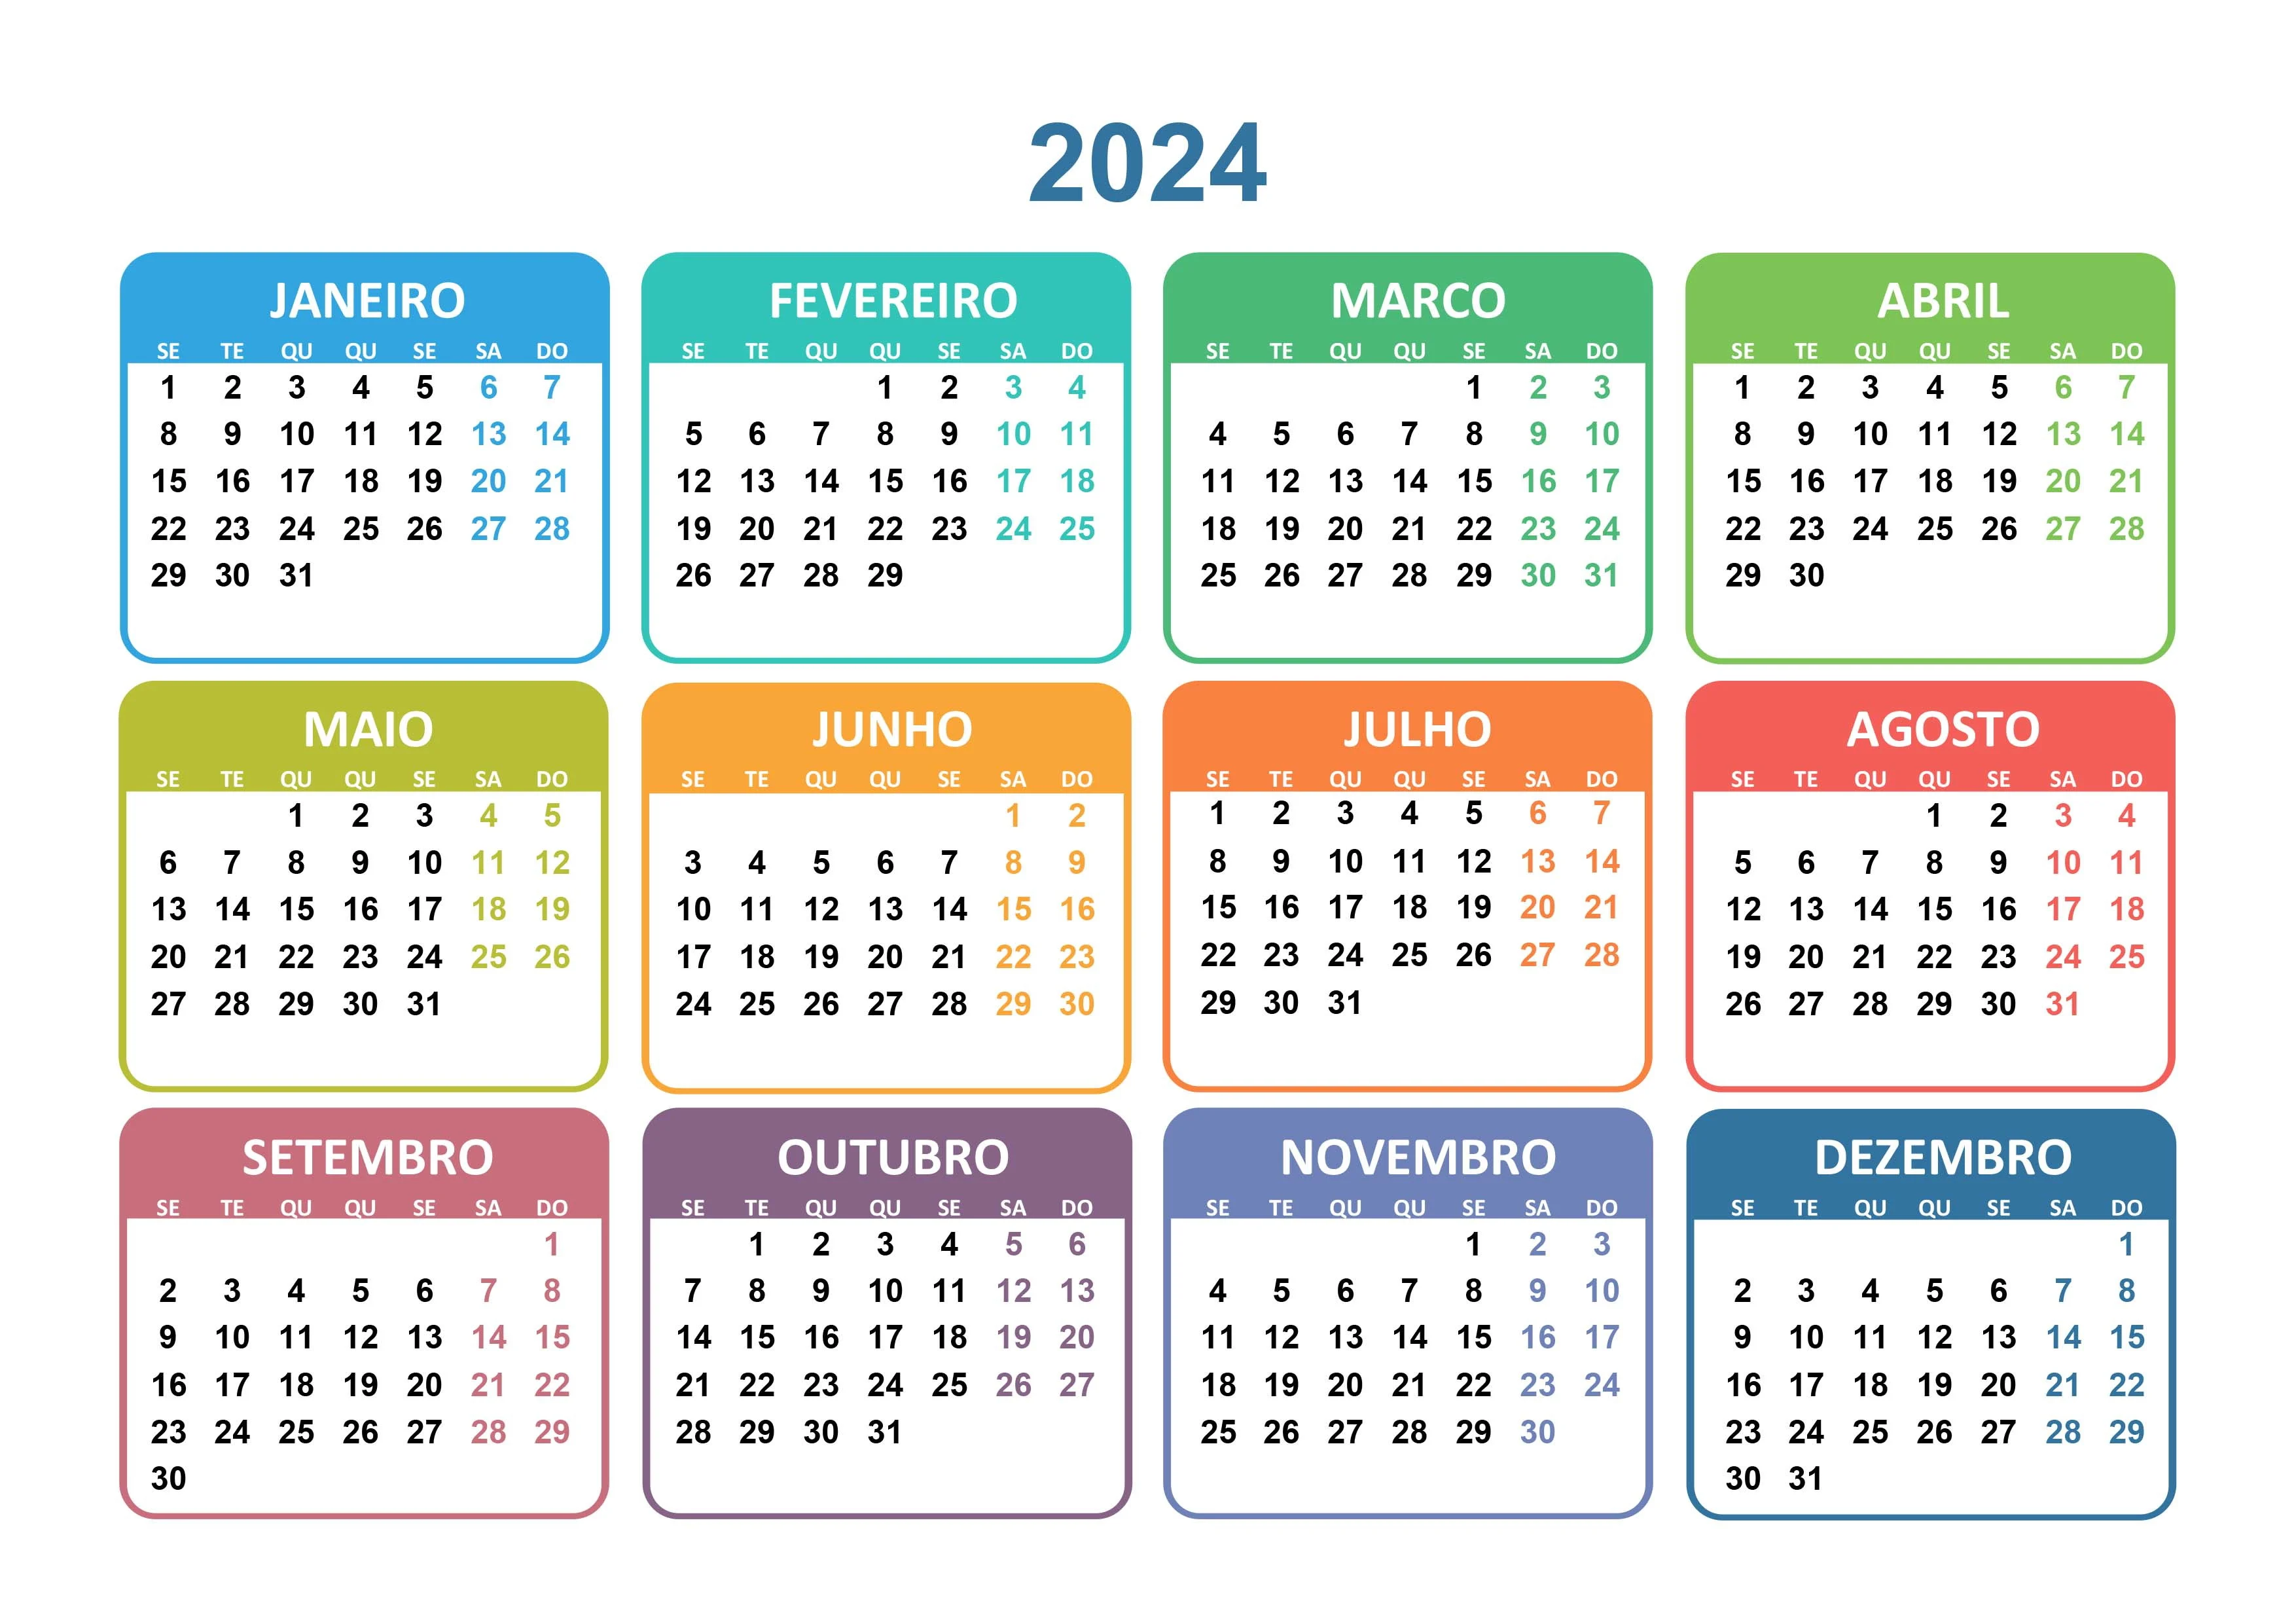 Diario do cerrado: 2024 terá 10 feriados e 8 pontos facultativos, confira